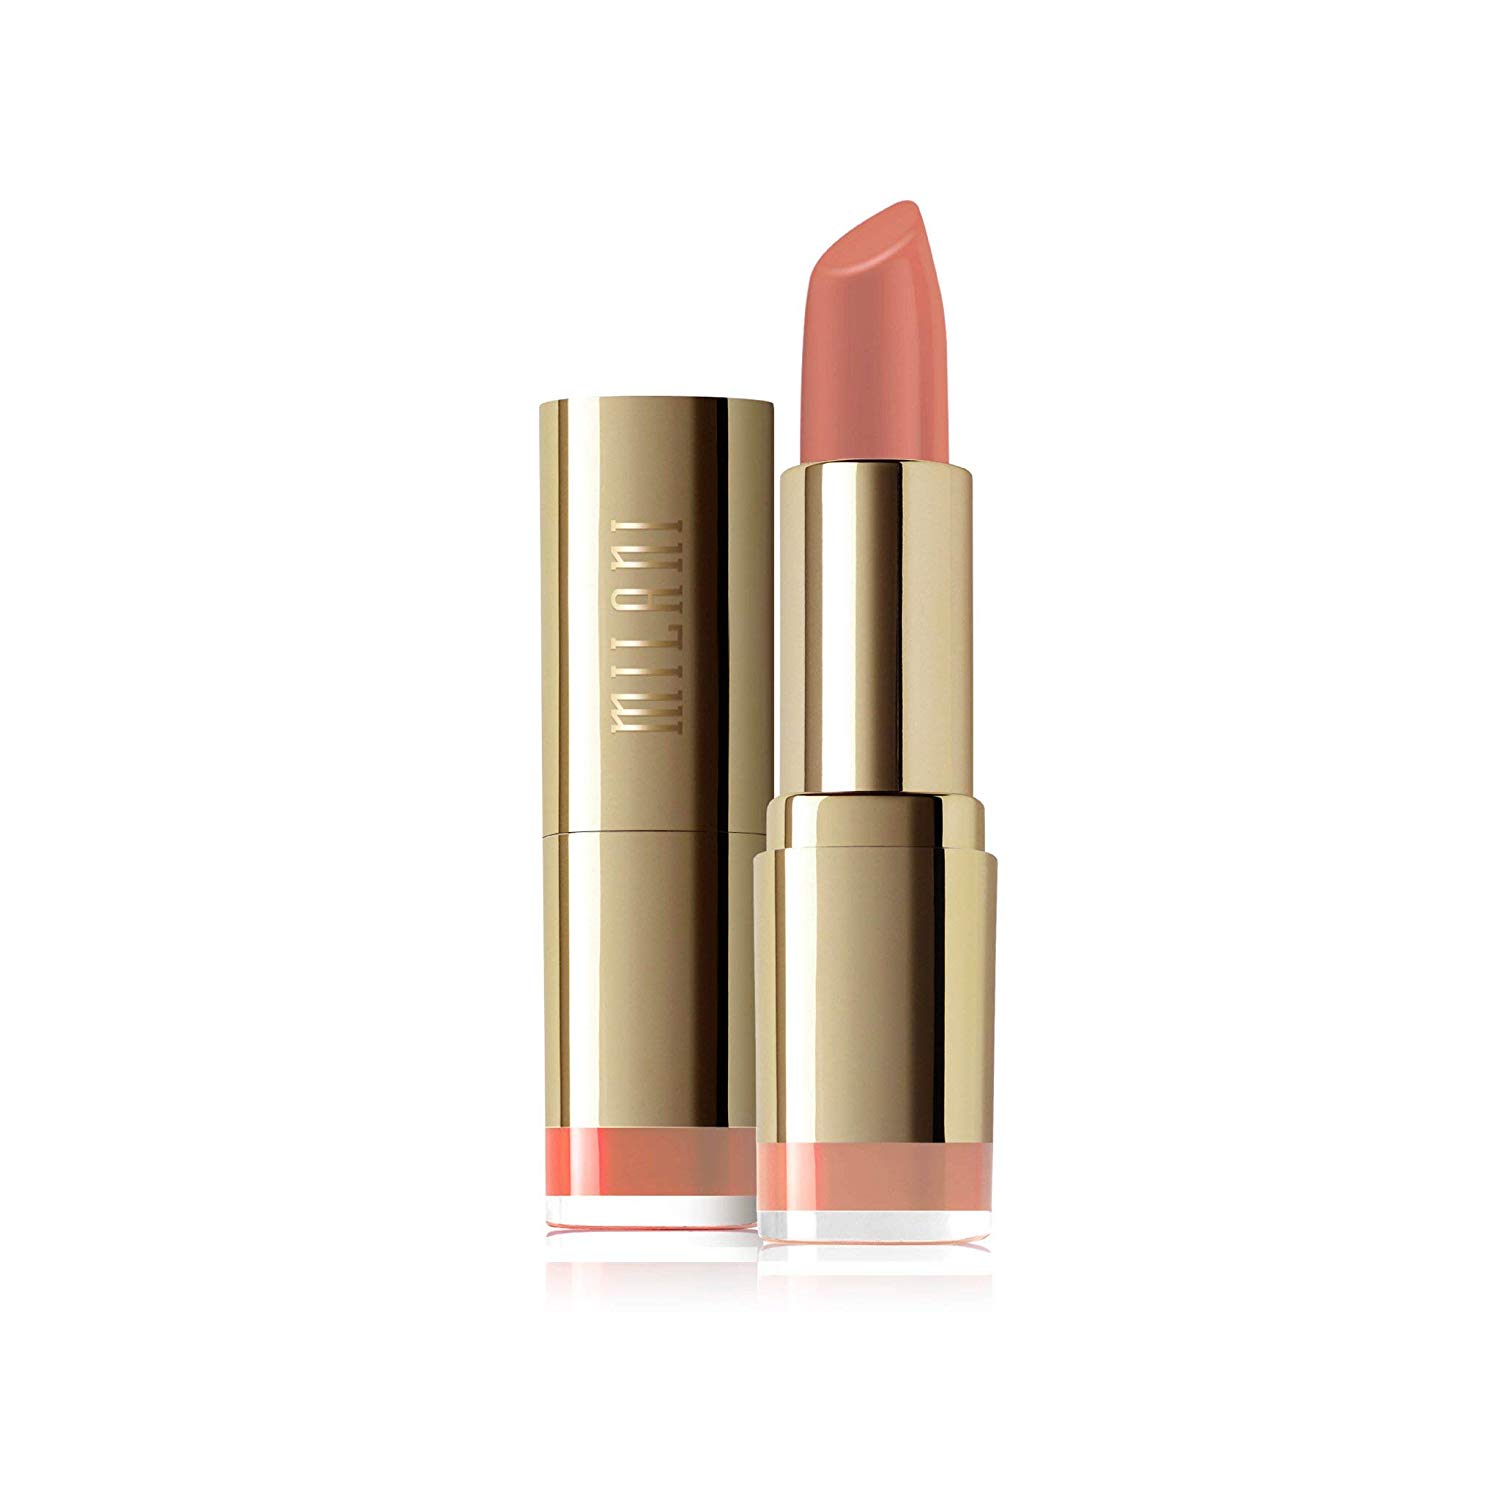 Price:$4.98 Milani Color Statement Lipstick - Nude Crème, Cruelty-Free Nourishing Lip Stick in Vibrant Shades, Pink Lipstick, 0.14 Ounce